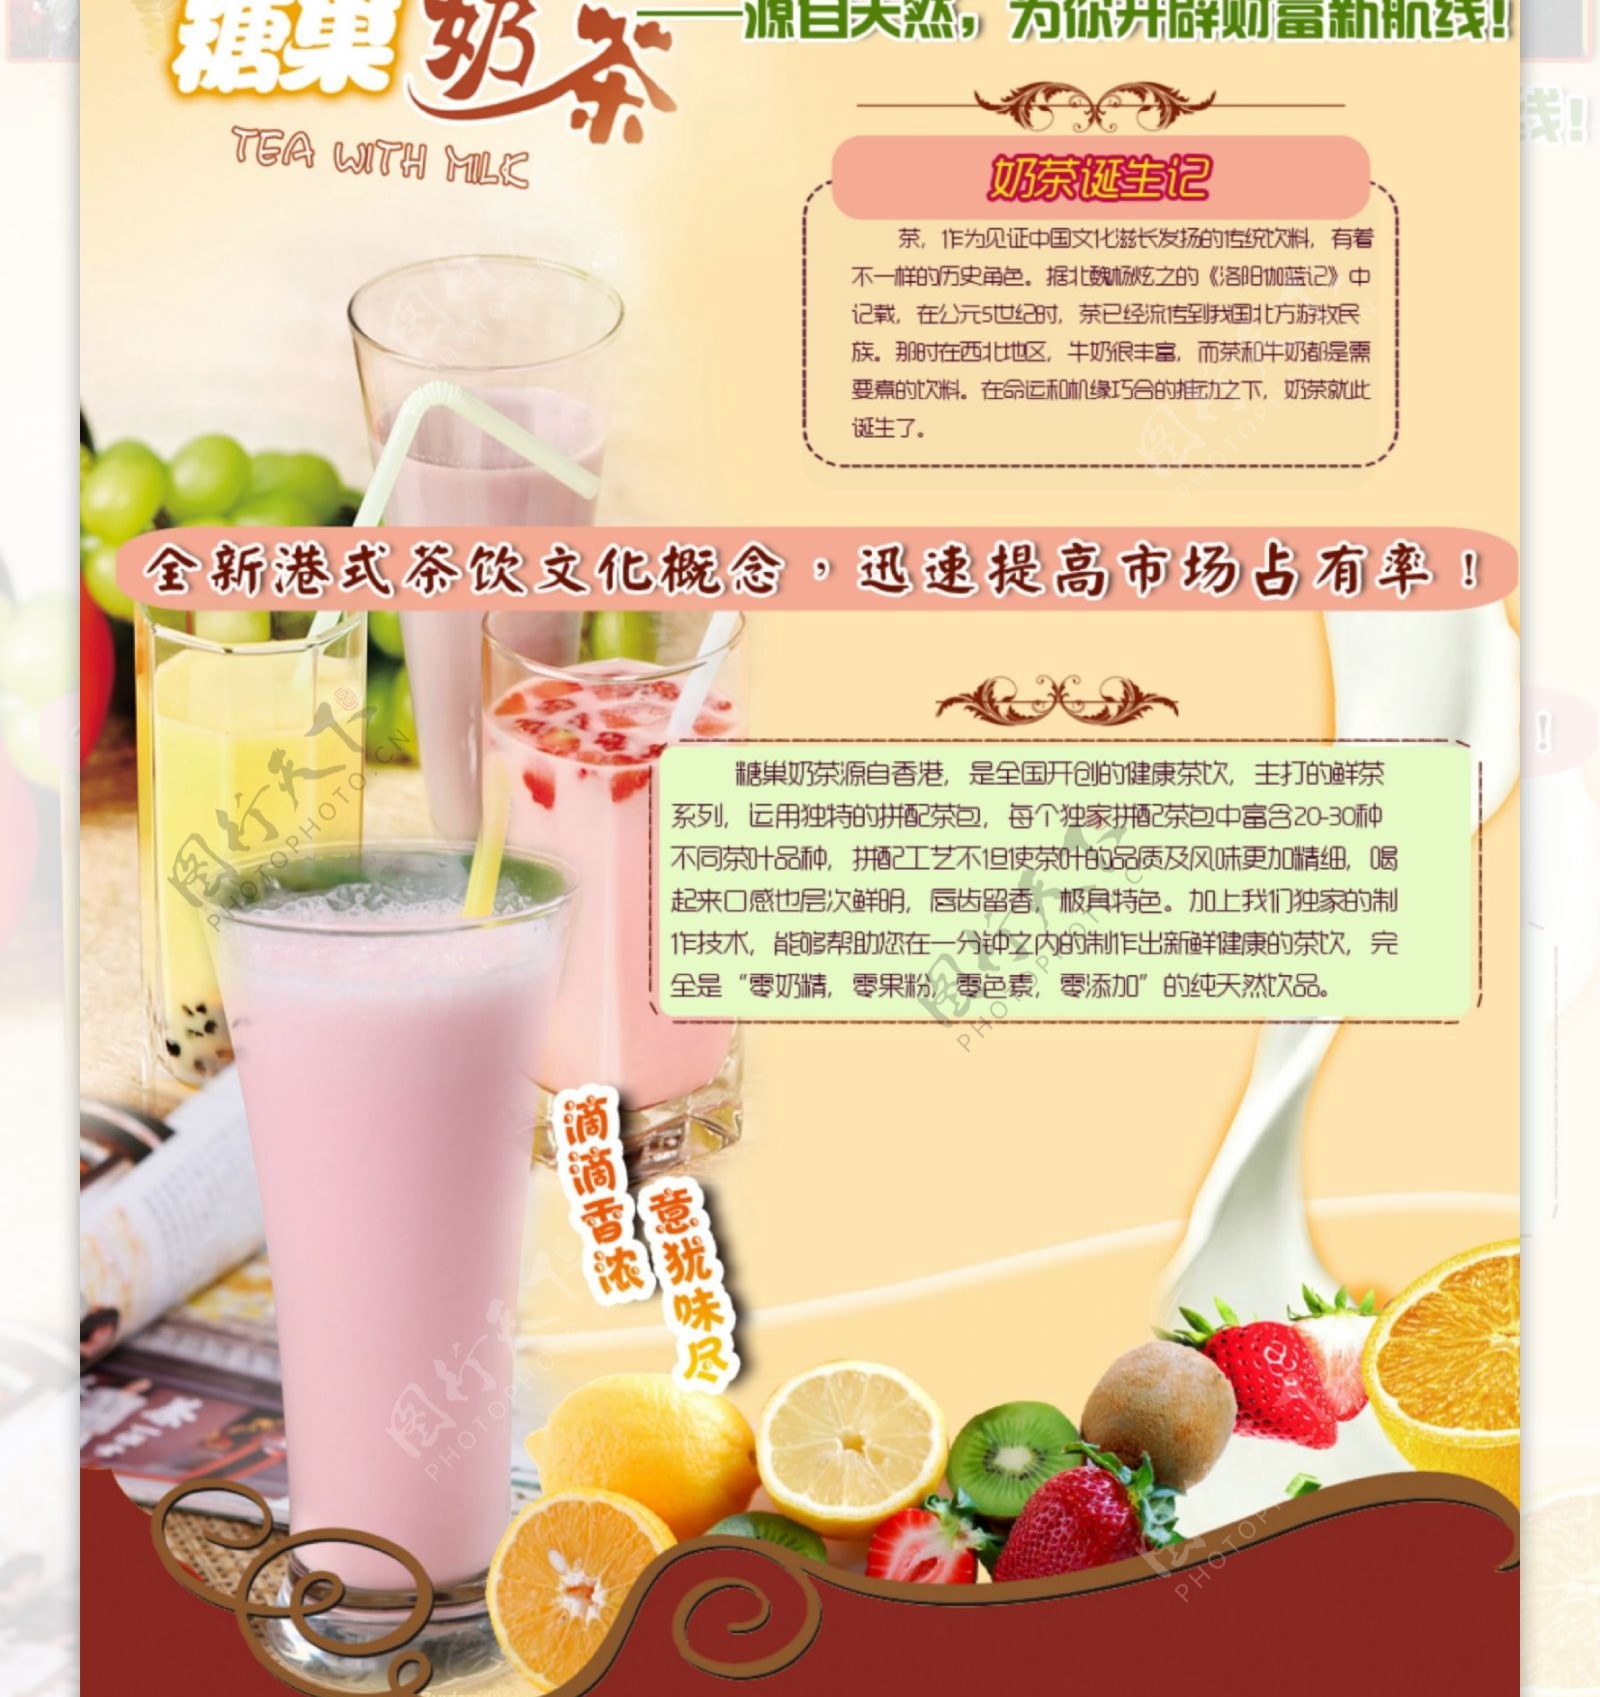 奶茶招商页面图片